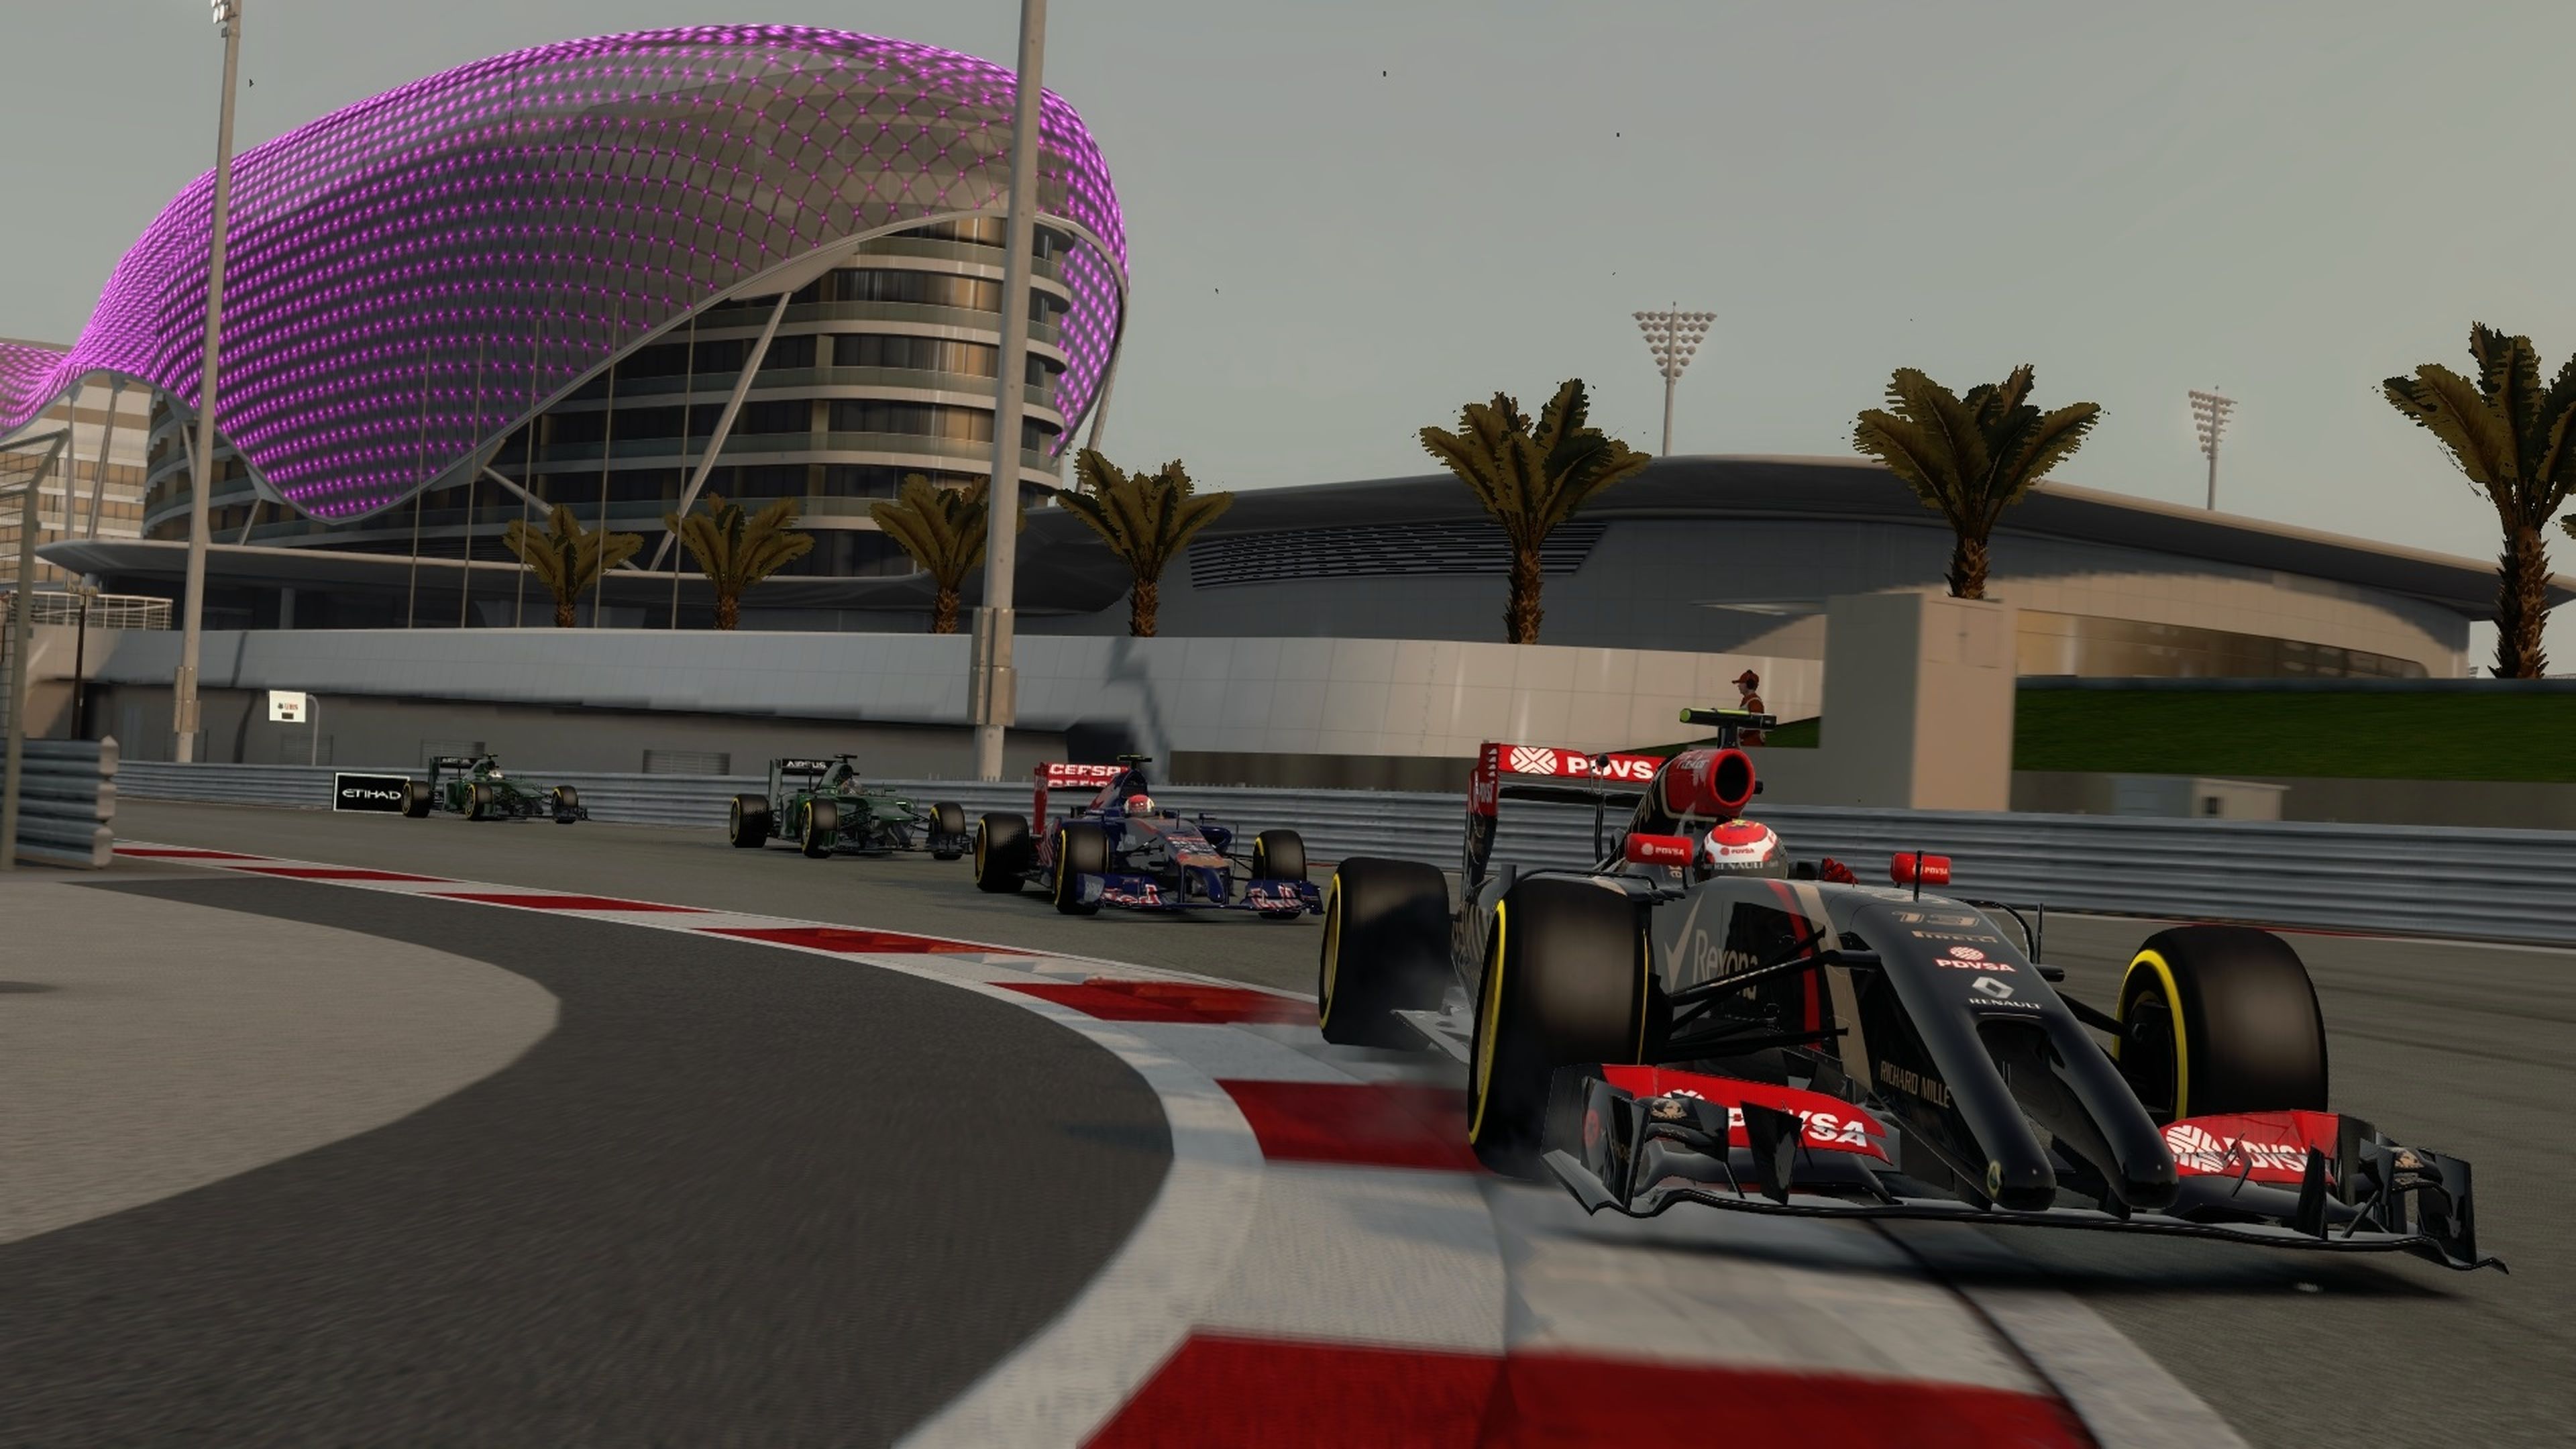 Análisis de F1 2014 para PS3, Xbox 360 y PC